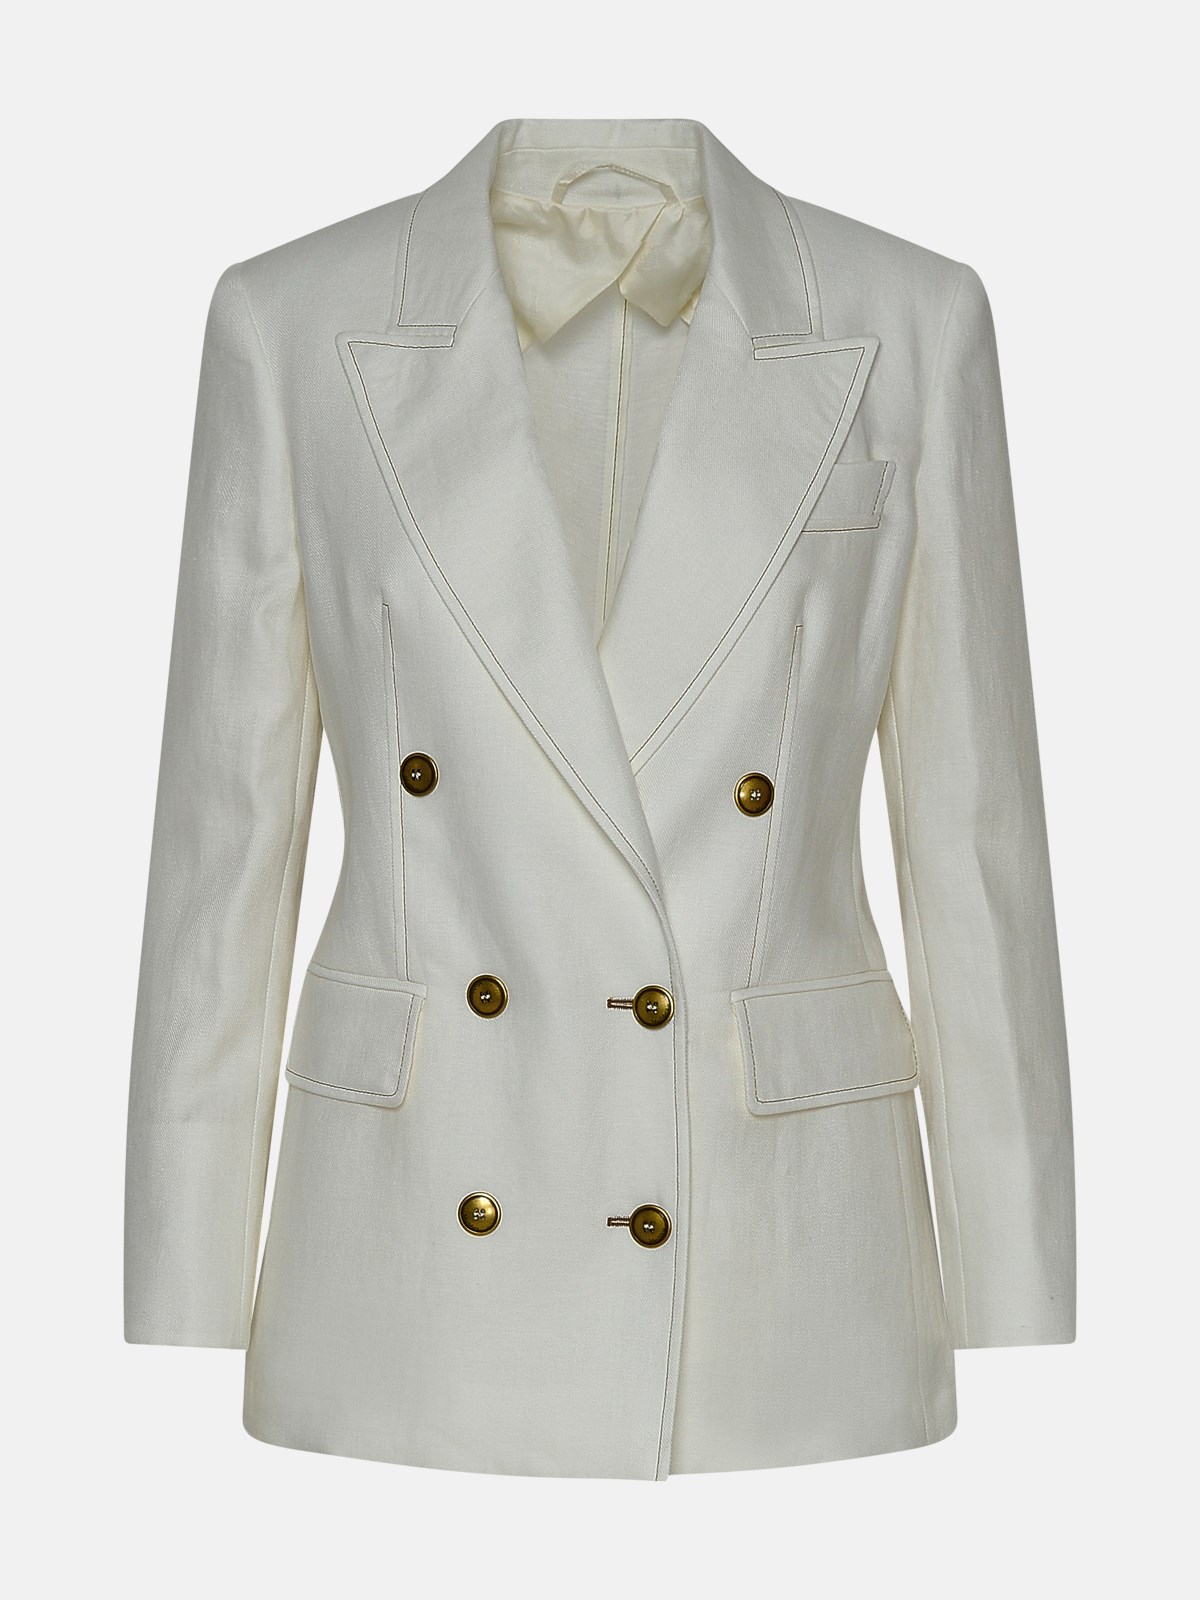 Max Mara White Linen Verace Blazer Jacket